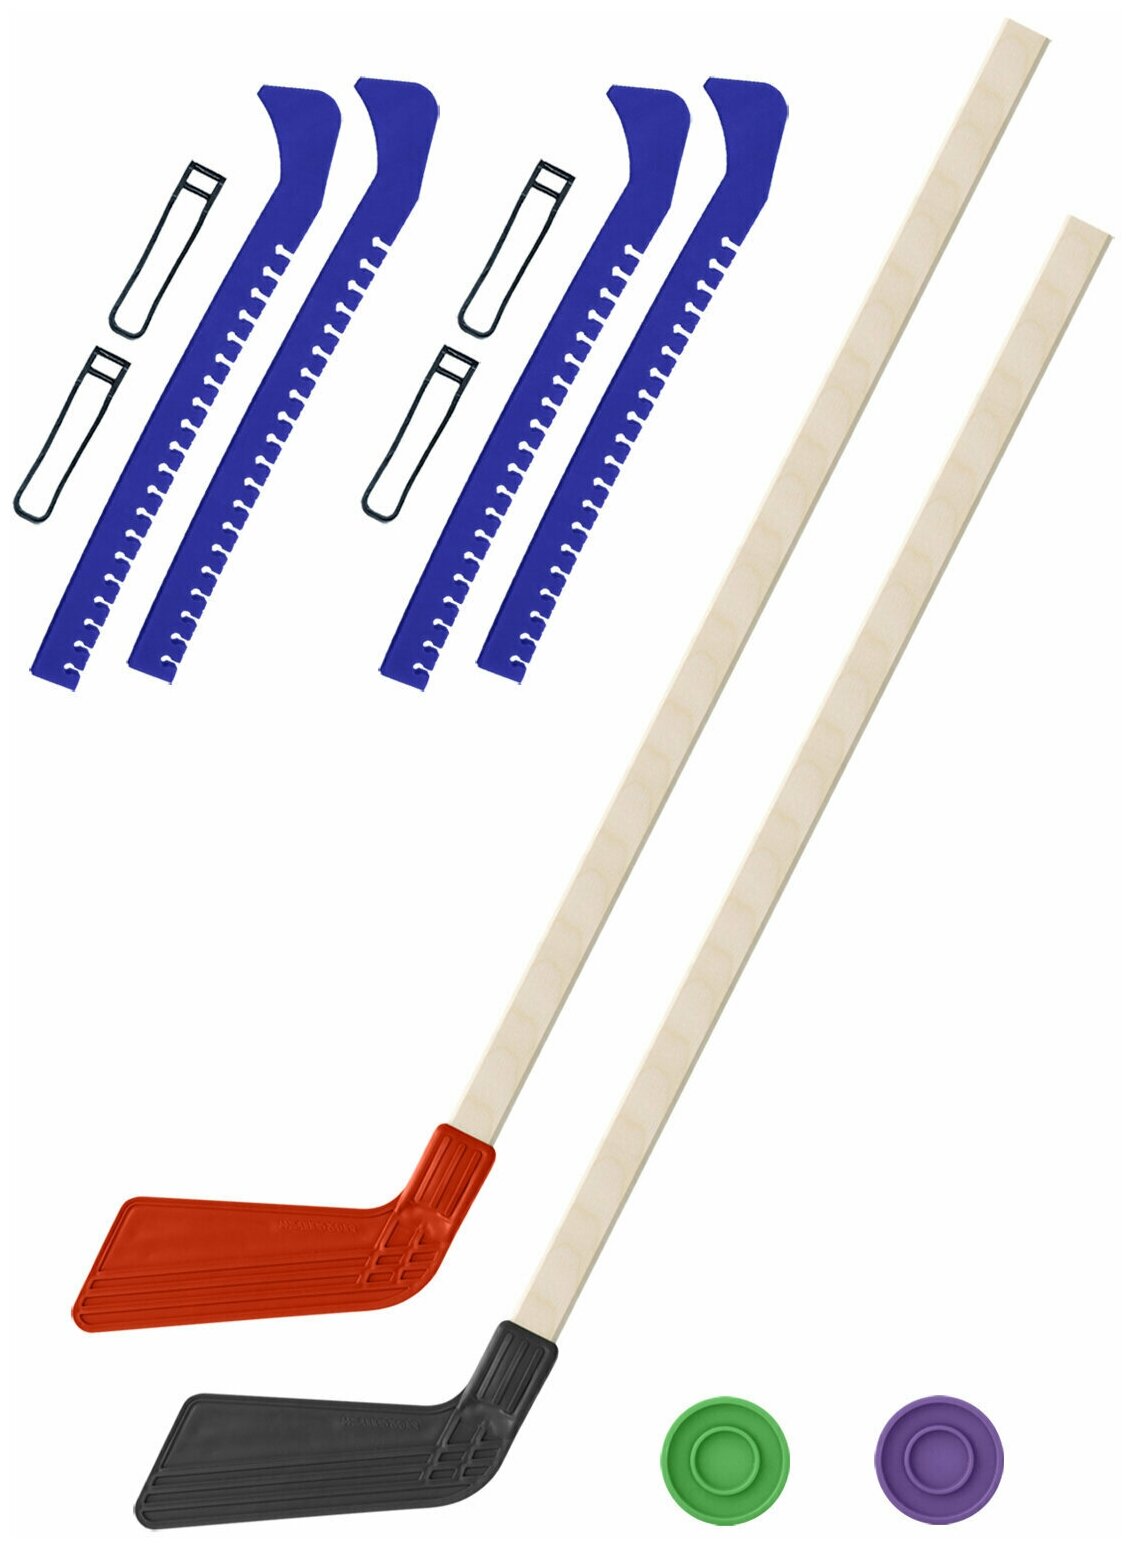 Детский хоккейный набор для игр на улице Клюшка хоккейная детская 2 шт красная и чёрная 80 см. + 2 шайбы + Чехлы для коньков синие - 2 шт.